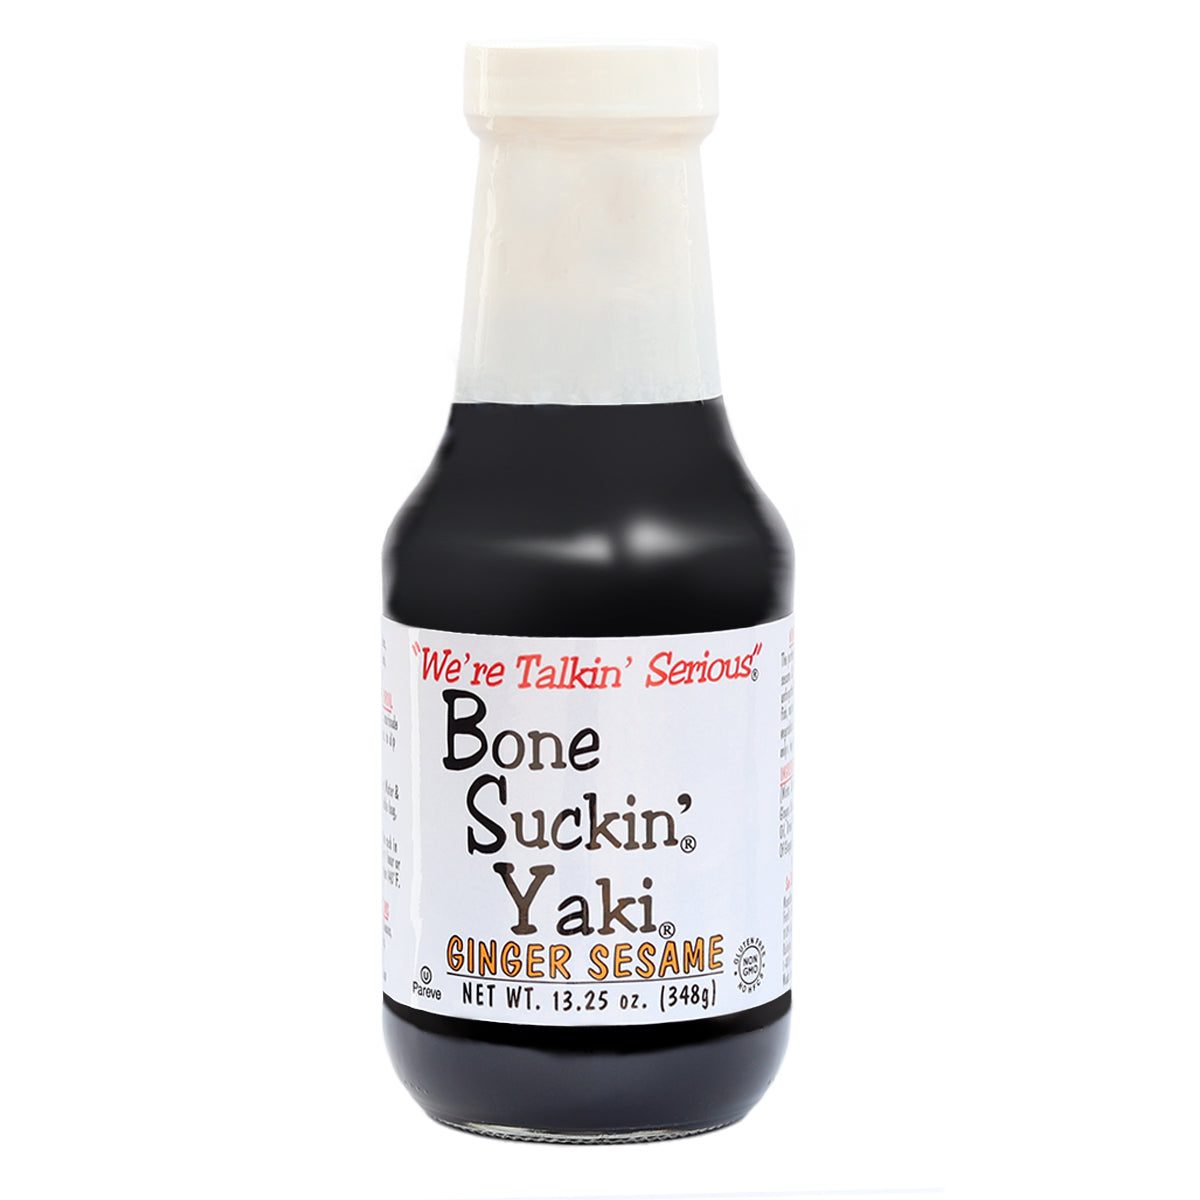  Bone Suckin'® Yaki® Ginger sesame, 12.25 oz